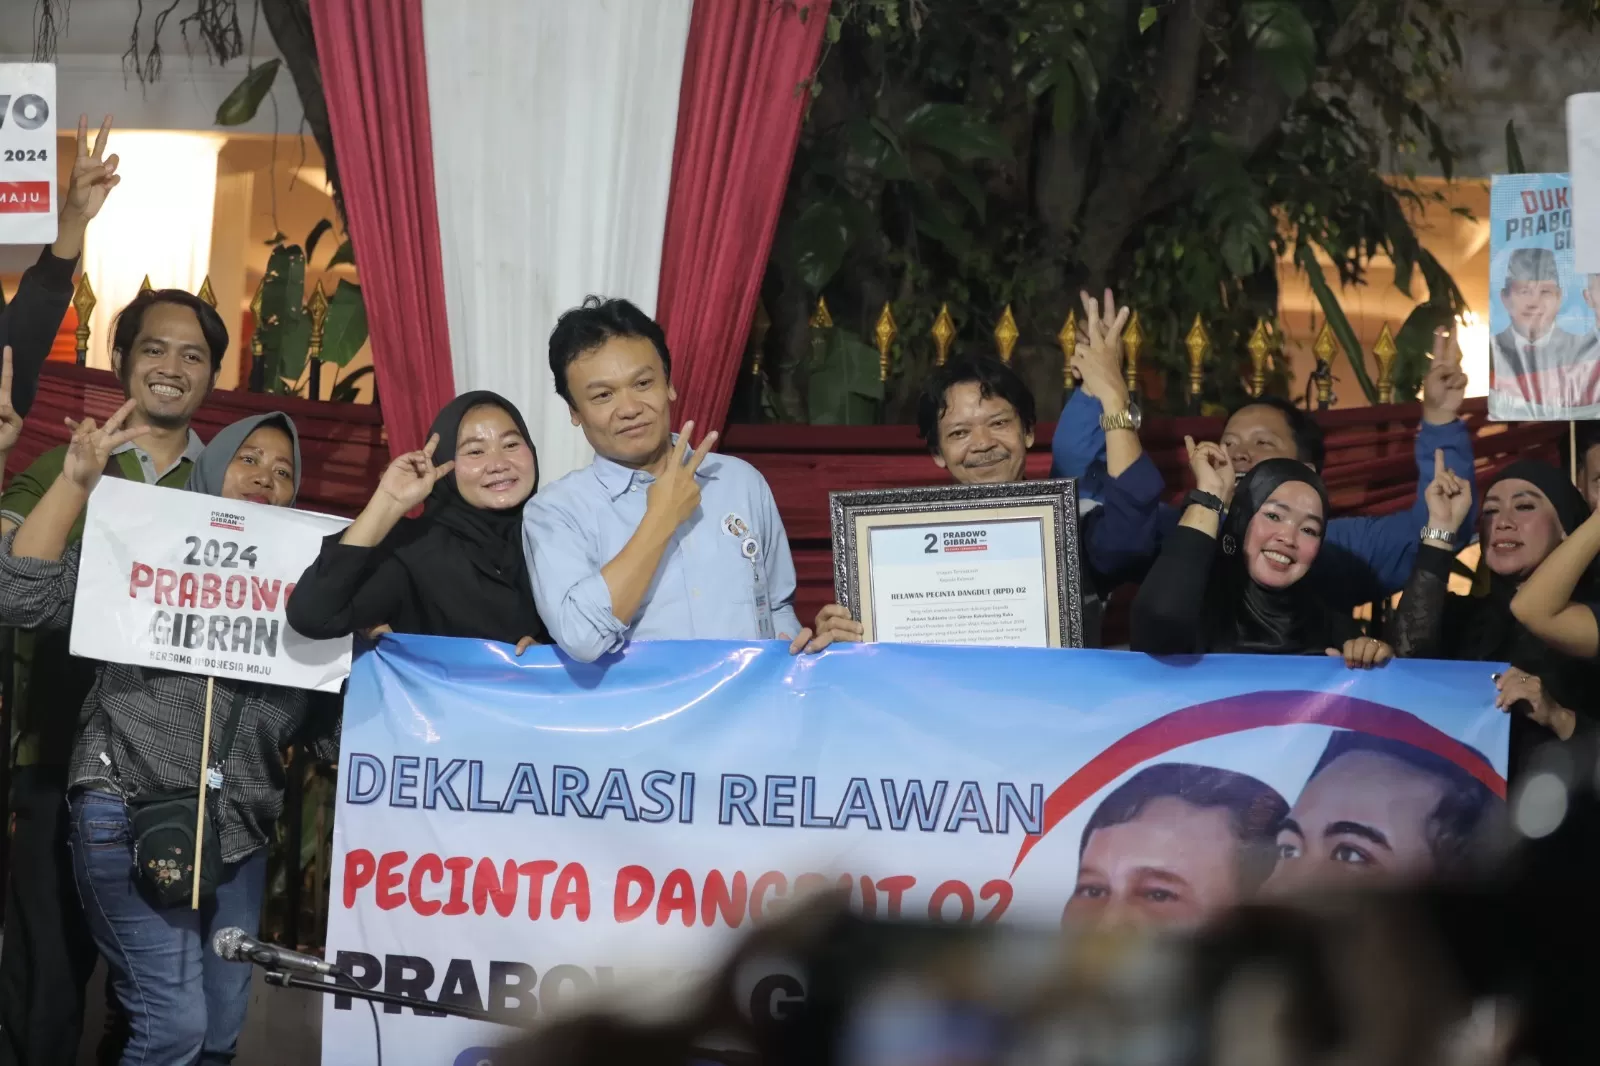 Deklarasi Dukung Prabowo Gibran, Relawan Pecinta Dangdut 02 Ingin Pekerja Seni Diperhatikan